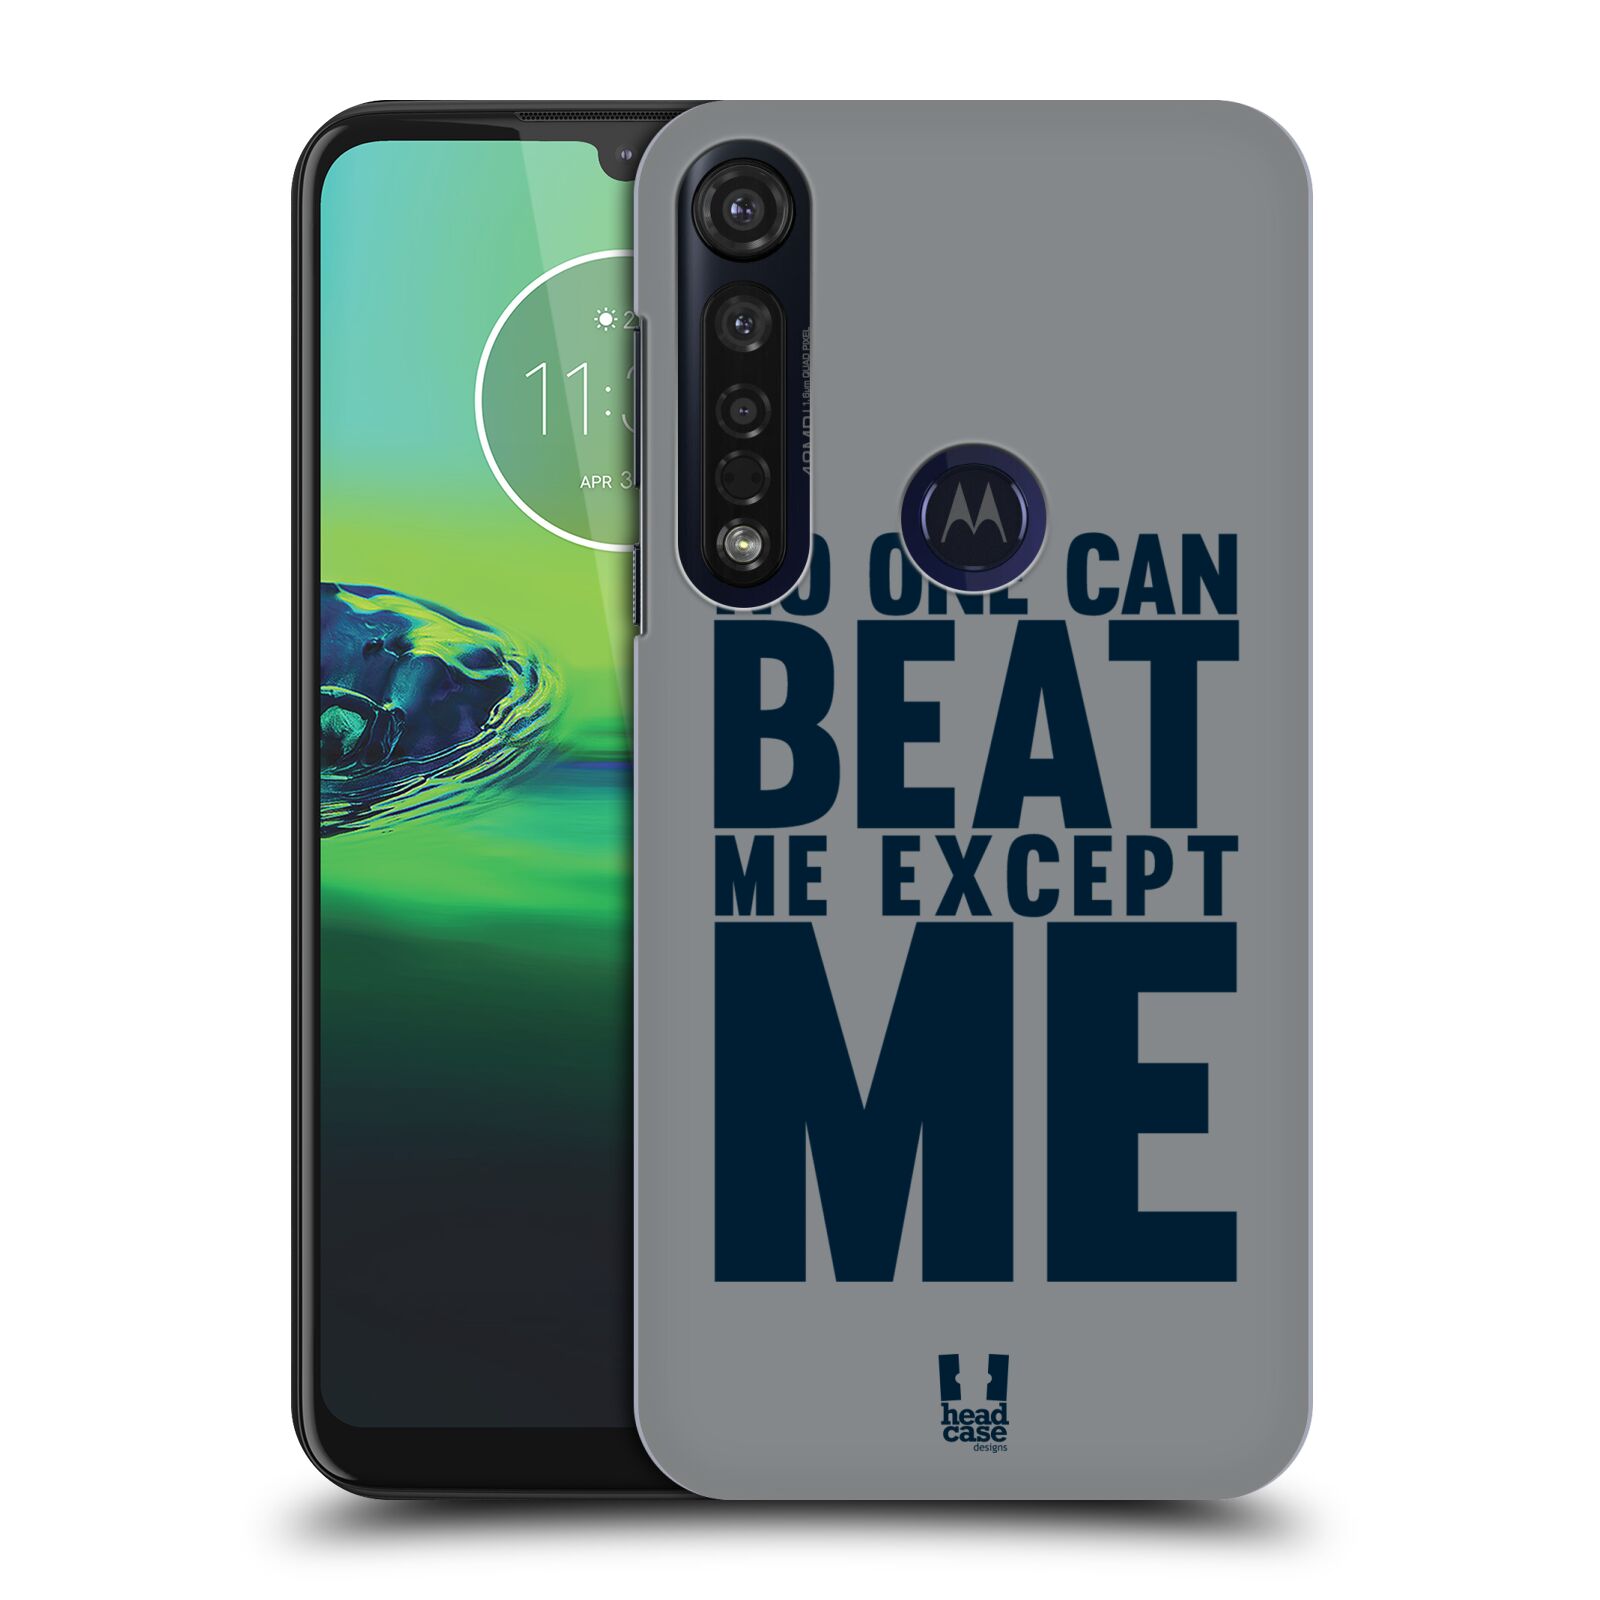 Pouzdro na mobil Motorola Moto G8 PLUS - HEAD CASE - Sportovní tématika síla vůle Beat ME